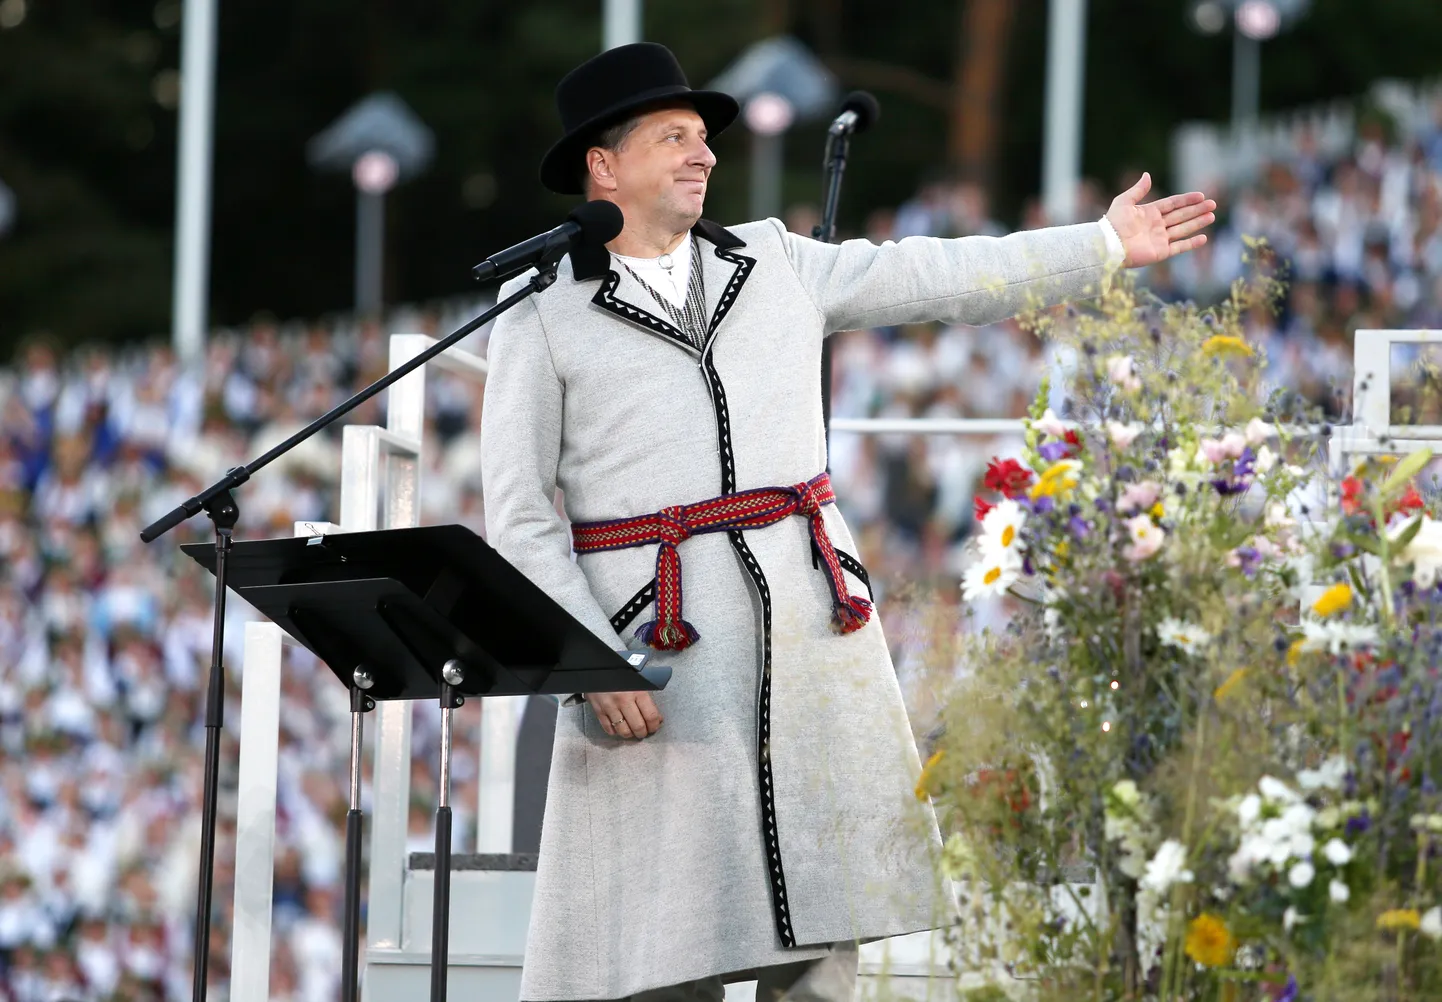 Valsts prezidents Raimonds Vējonis saka uzrunu XXVI Vispārējo latviešu Dziesmu un XVI Deju svētku noslēguma koncertā "Zvaigžņu ceļā" Mežaparka Lielajā estrādē.